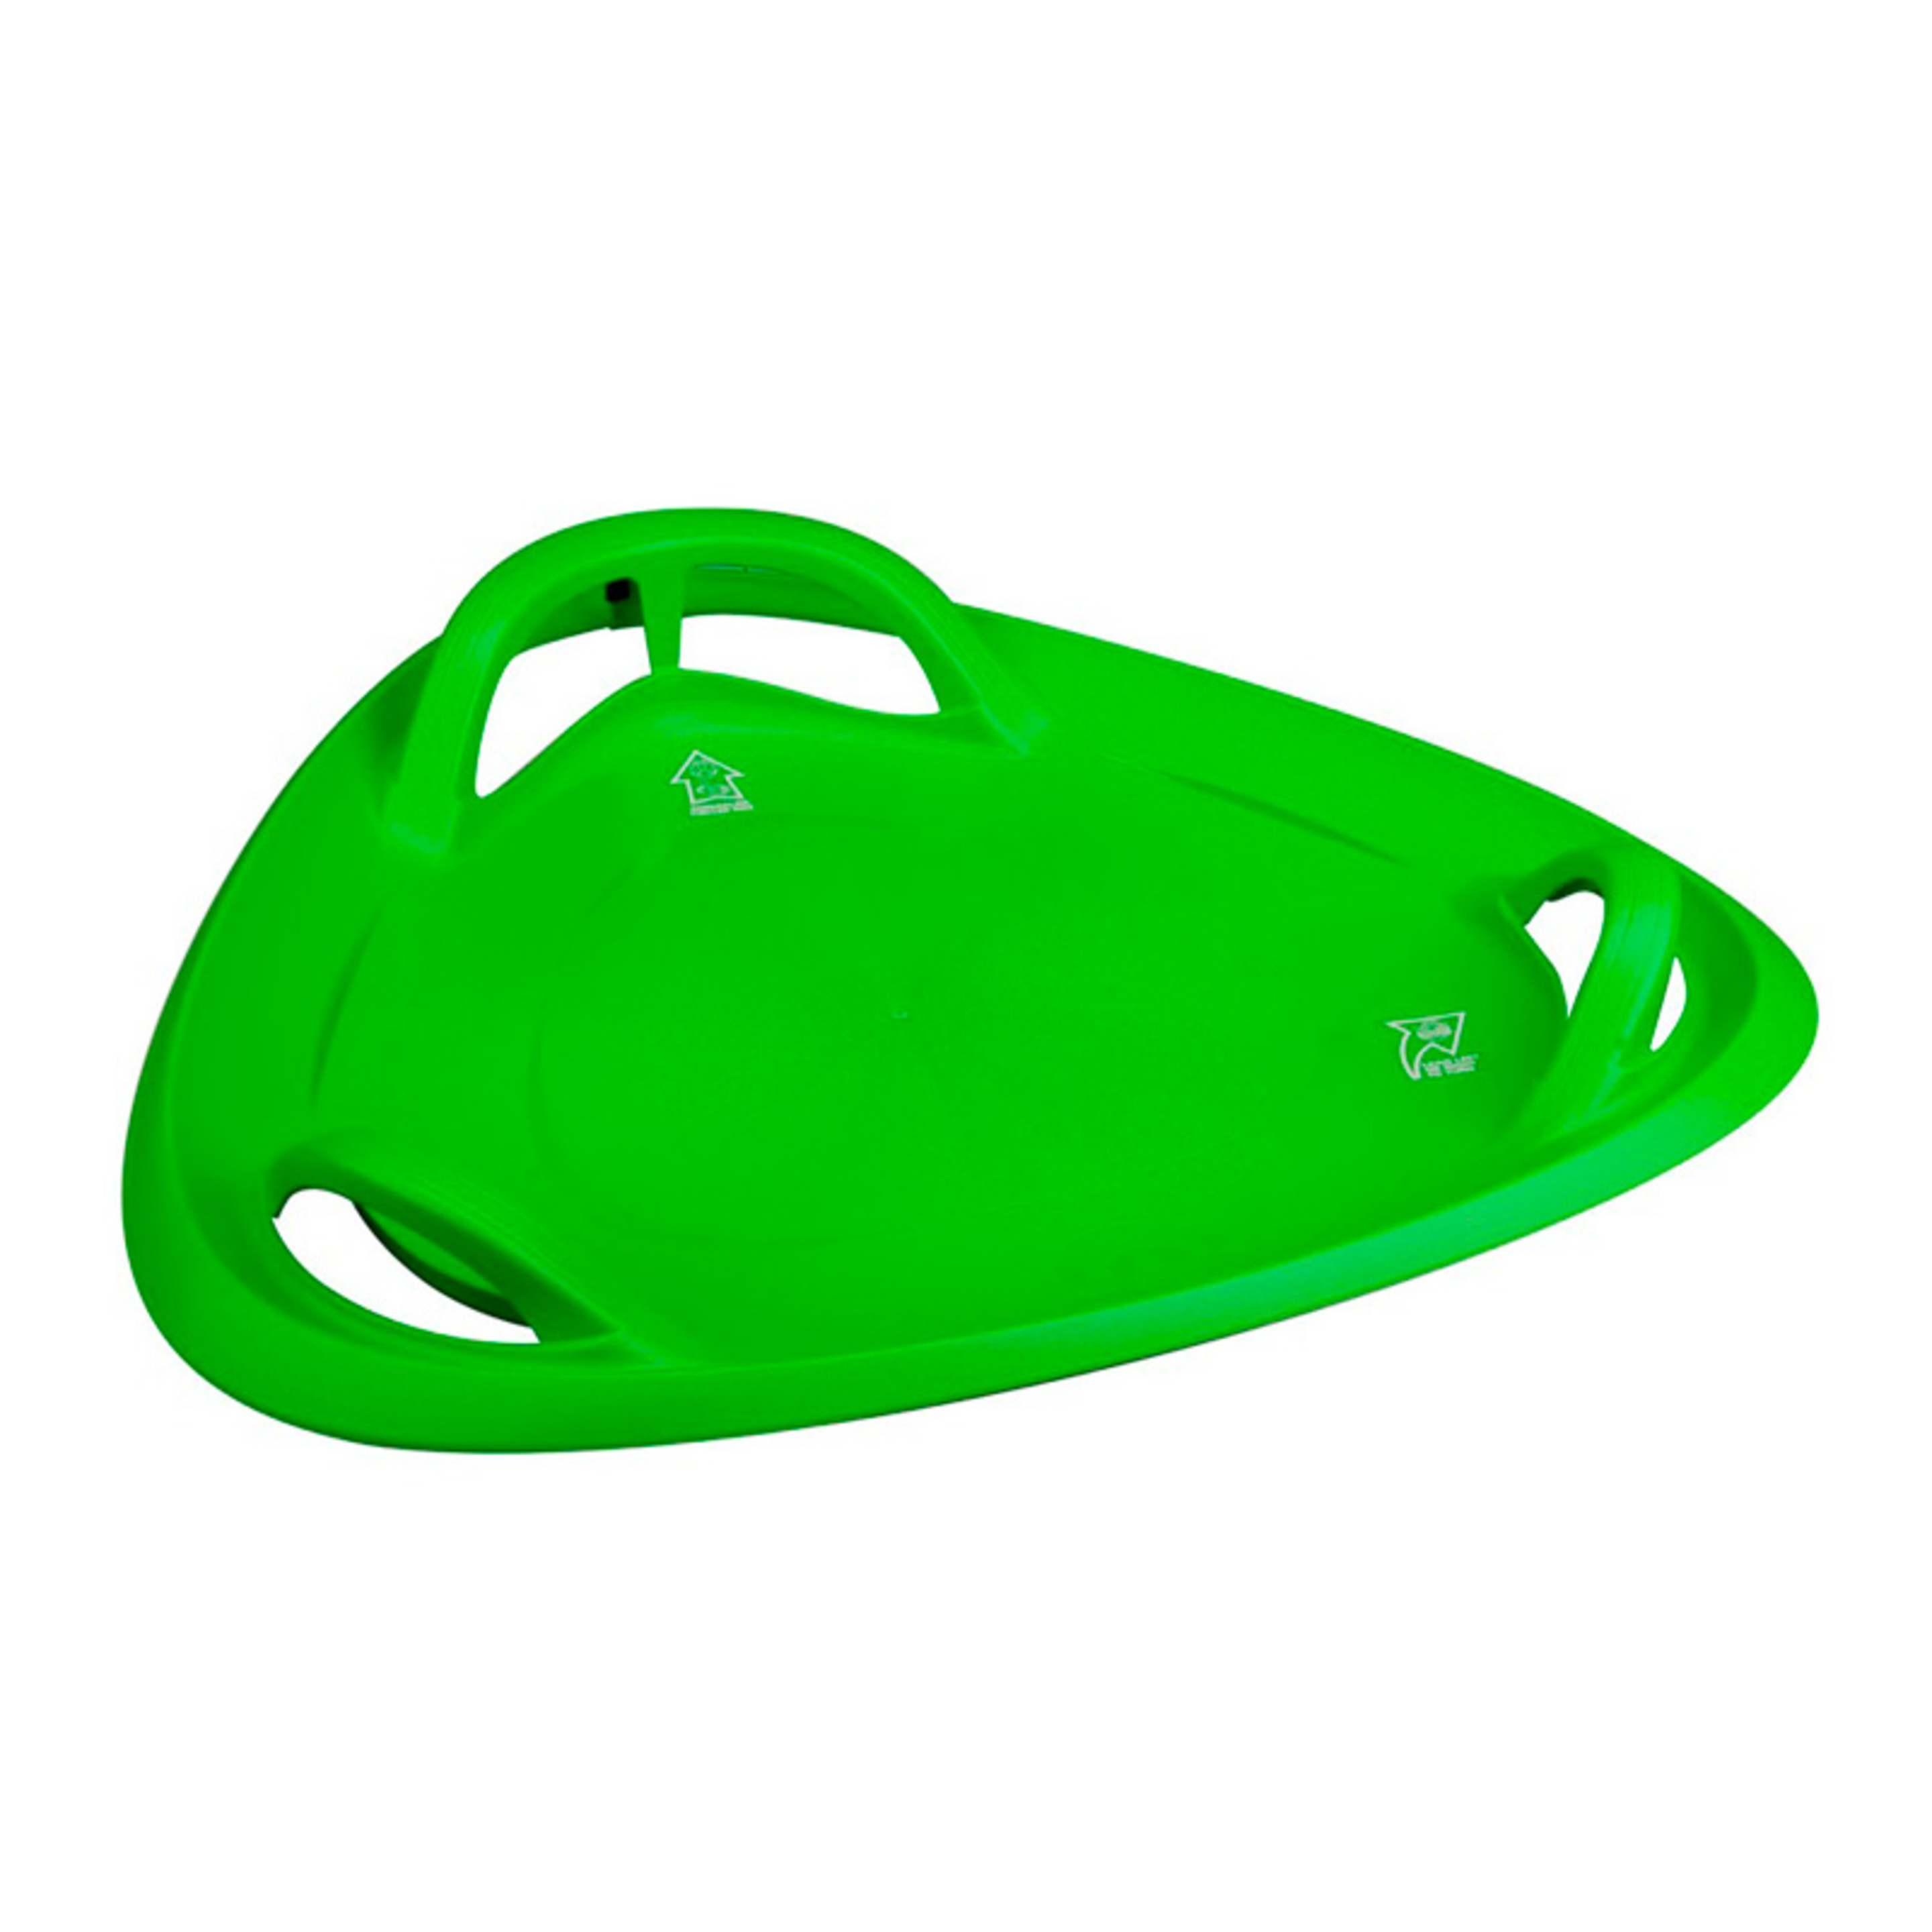 Sr Di Trineo Triangulo Plastico Verde - verde  MKP